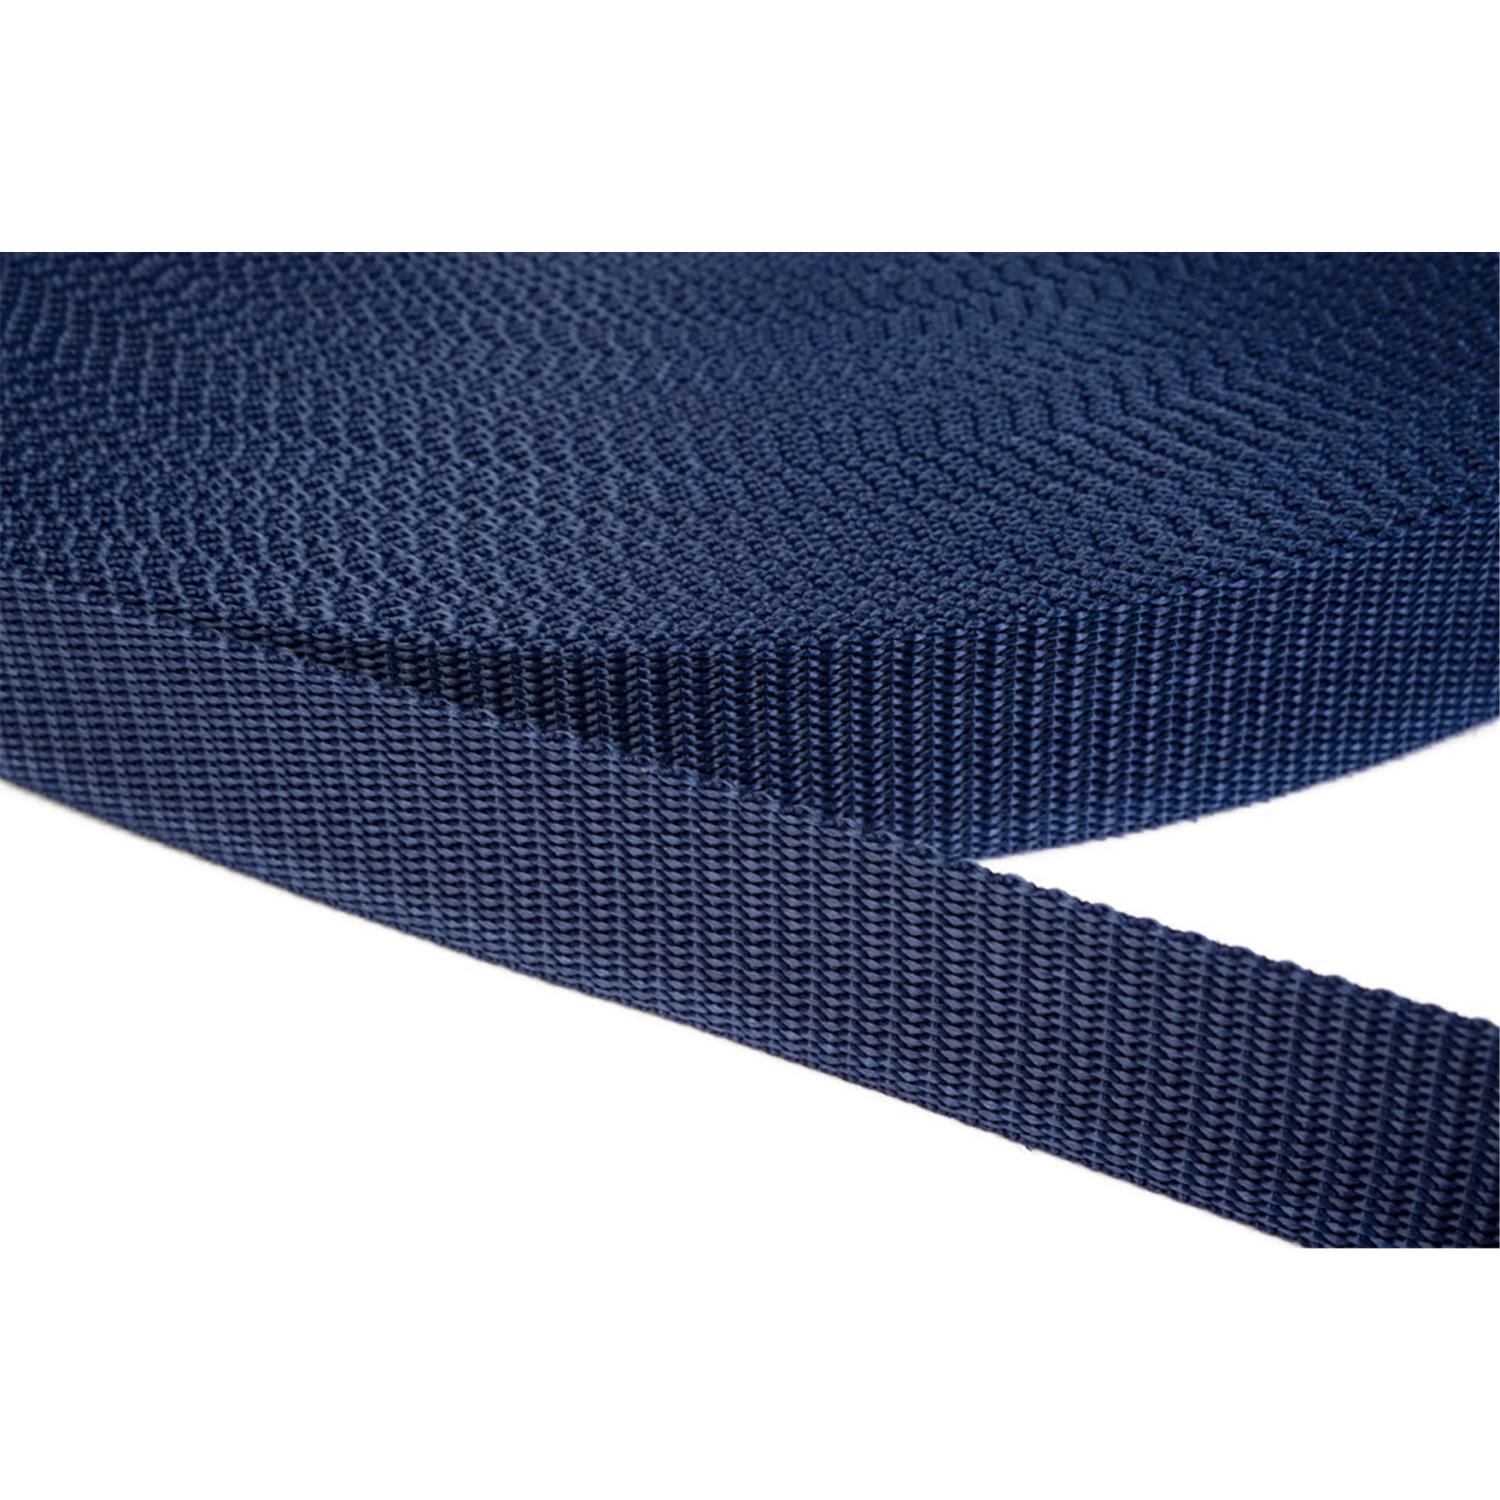 Gurtband 40mm breit aus Polypropylen in 41 Farben 27 - dunkelblau 6 Meter